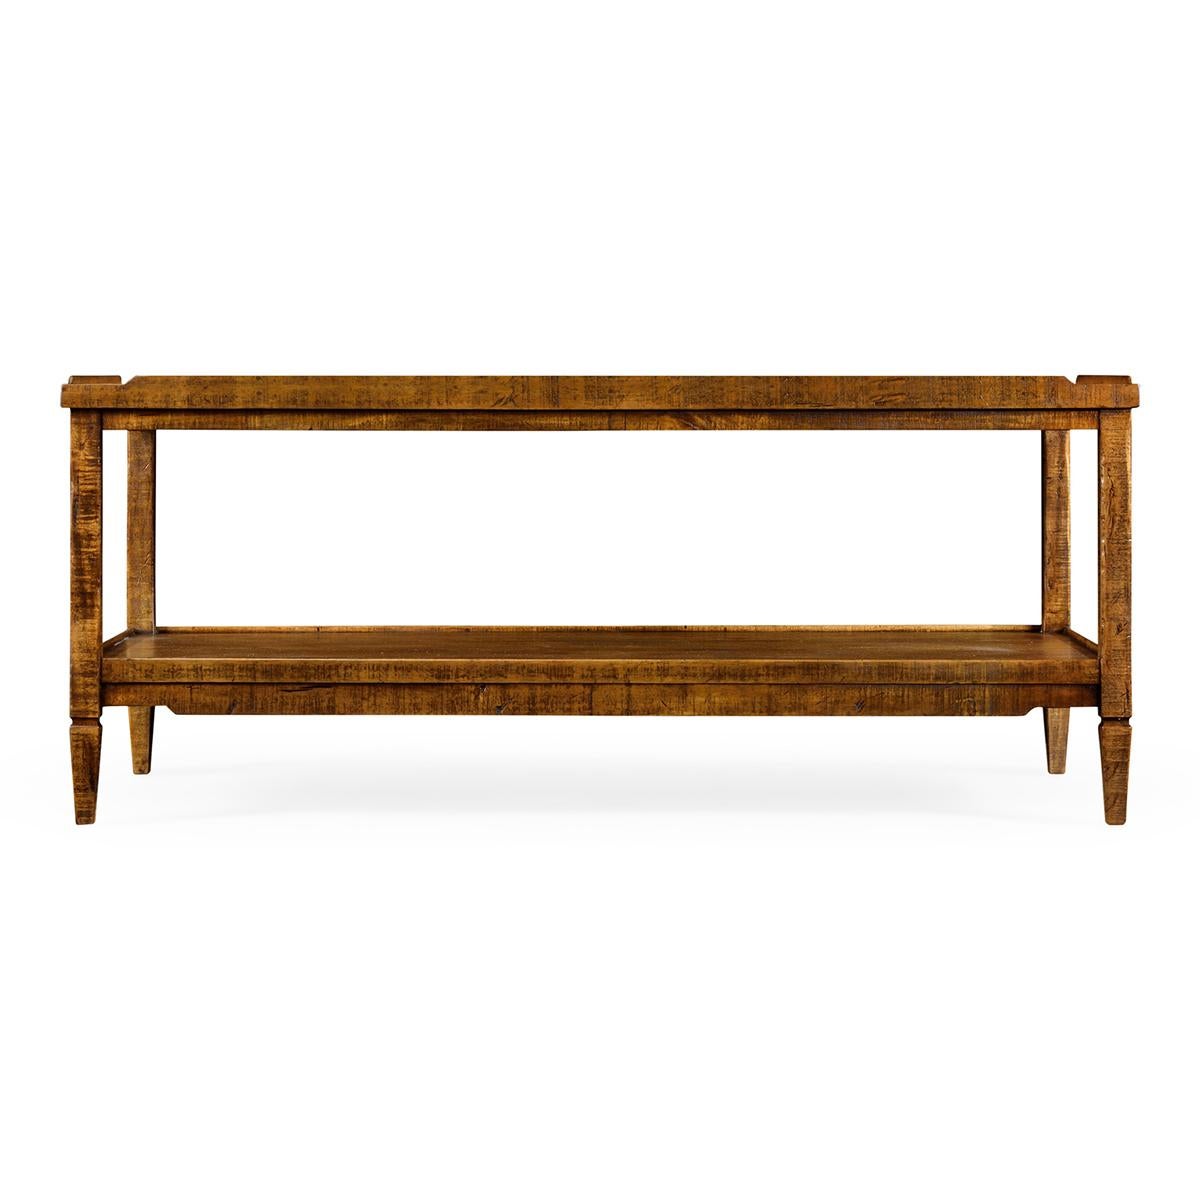 Table basse de style rustique français en finition noyer vieilli avec une galerie en bois, des pieds fuselés carrés et une étagère inférieure.

Dimensions : 48